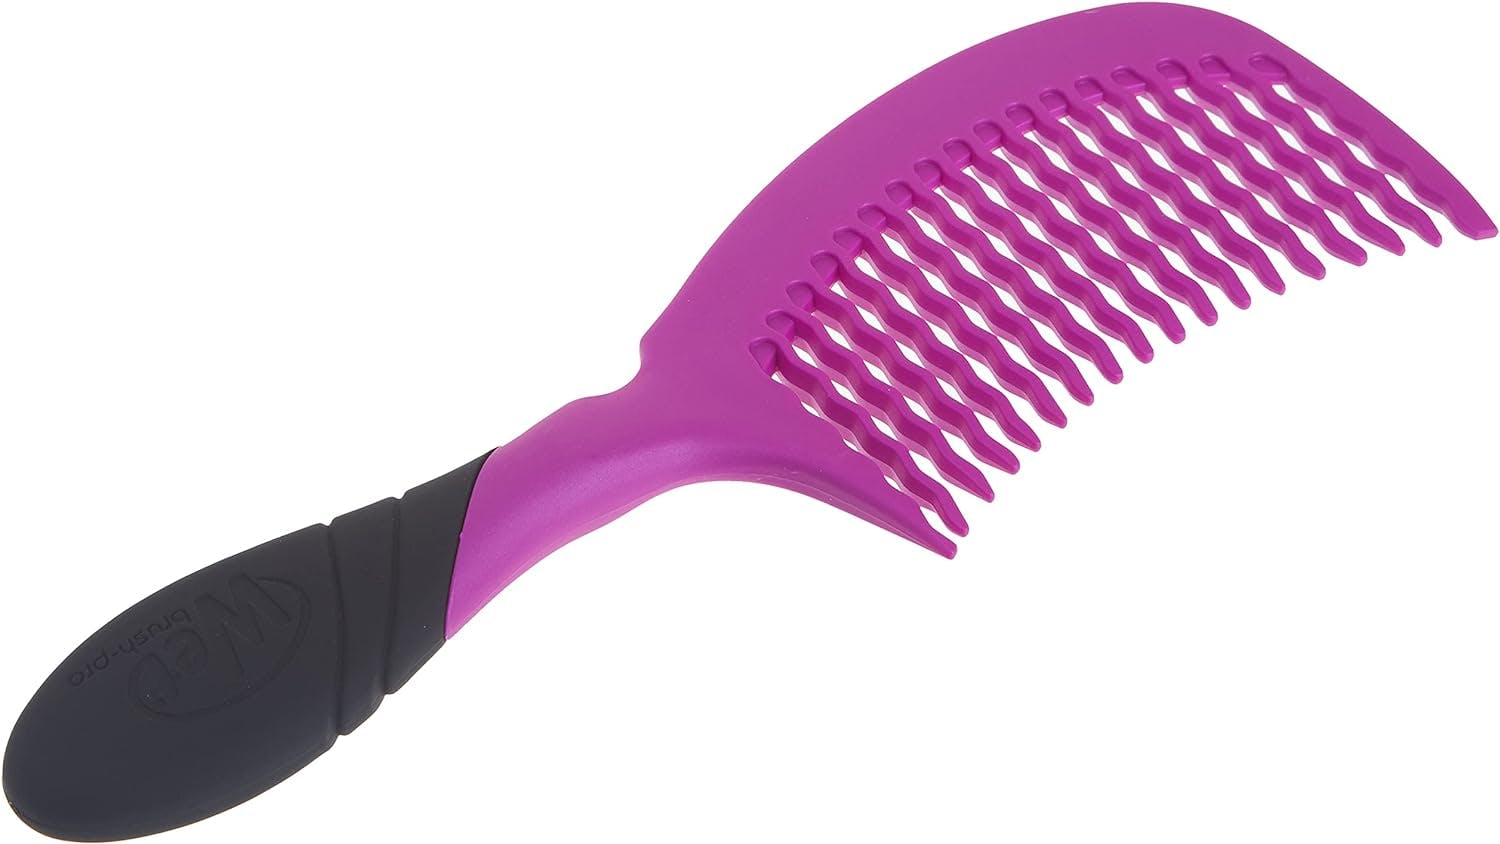 Wet Brush Pro Basin Comb Detangler Purple